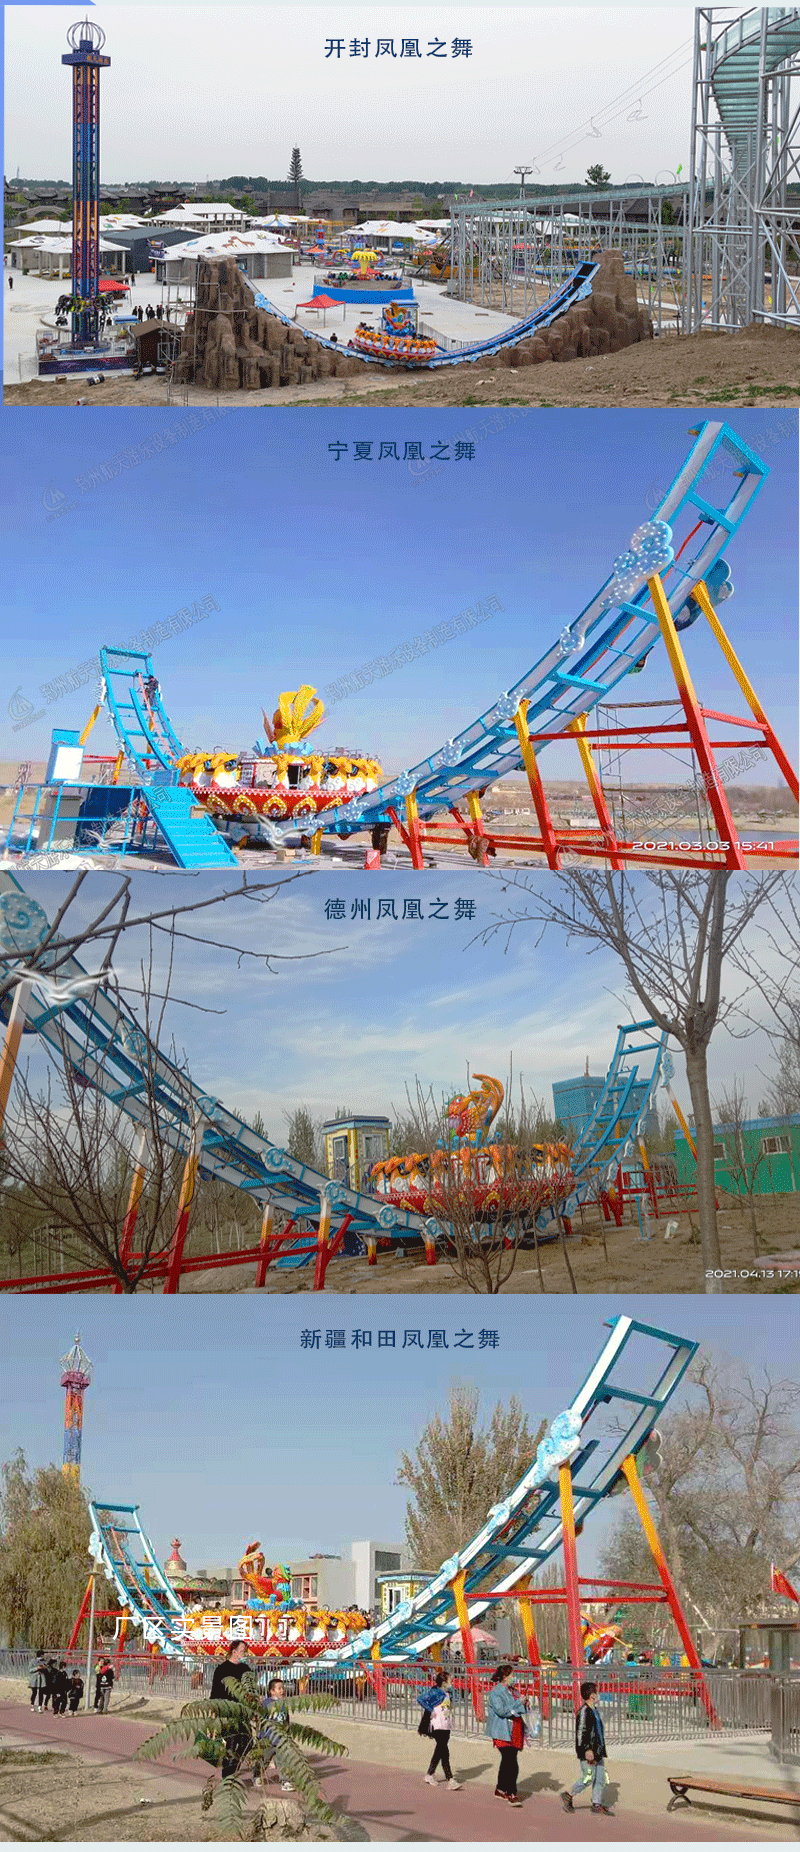 郑州销售大型轨道飞碟游乐场设备航天游乐电话 4